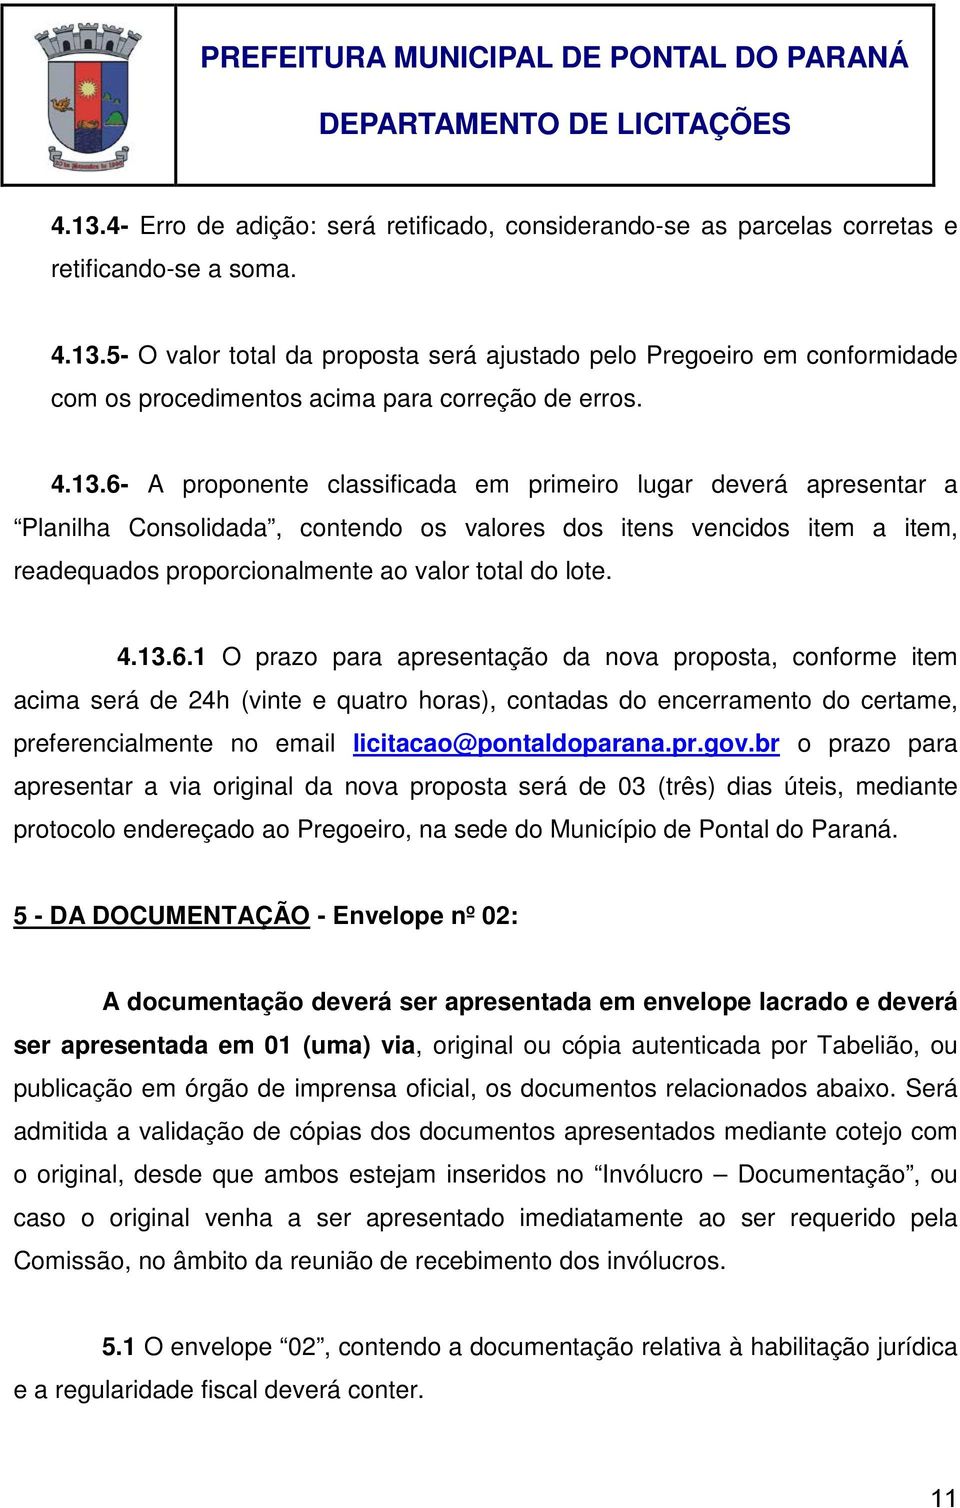 4.13.6.1 O prazo para apresentação da nova proposta, conforme item acima será de 24h (vinte e quatro horas), contadas do encerramento do certame, preferencialmente no email licitacao@pontaldoparana.